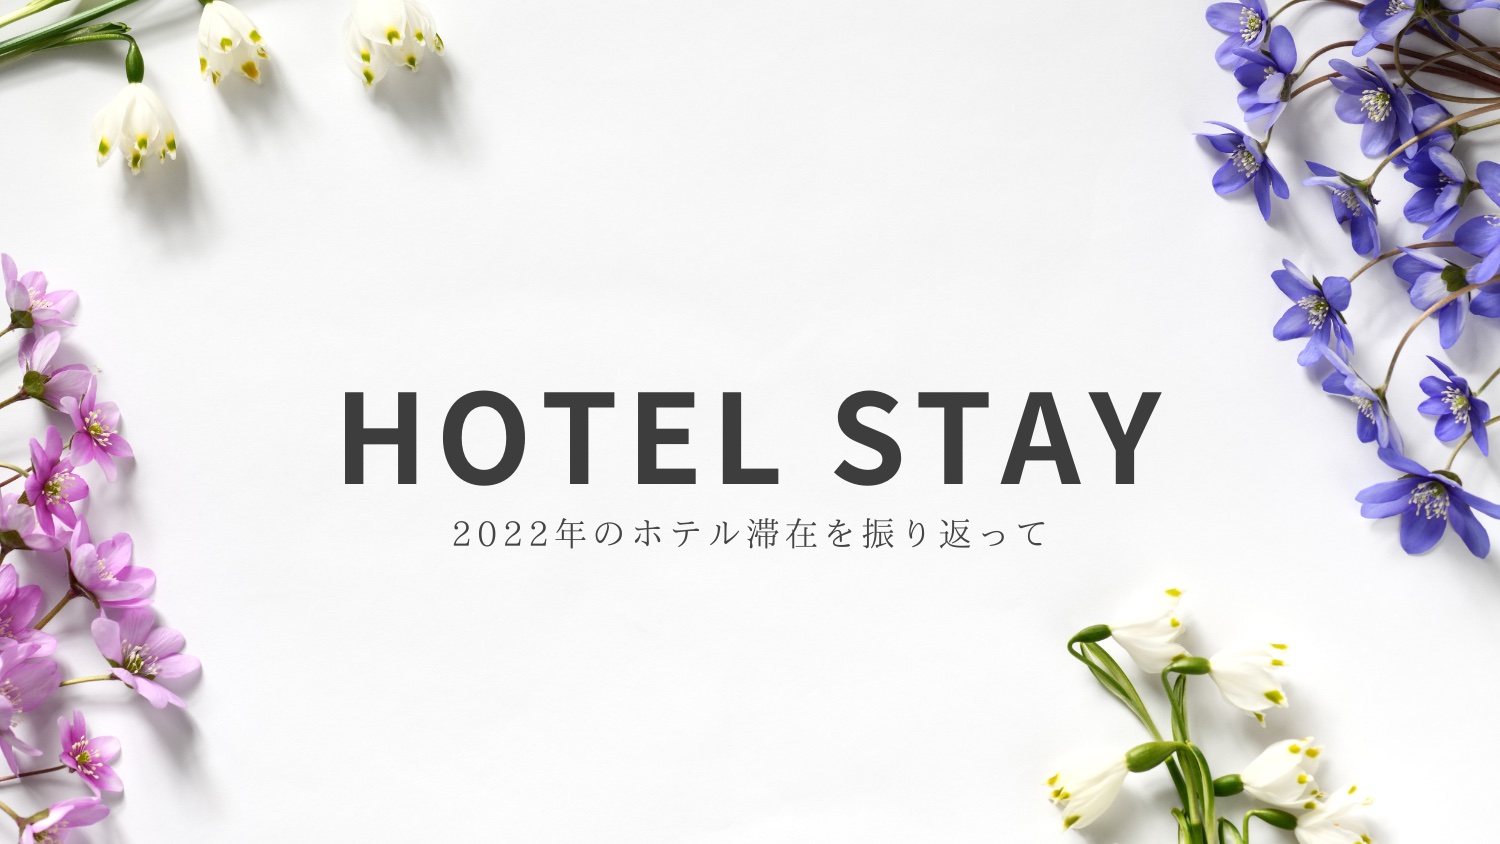 2022年のホテル滞在を振り返って。